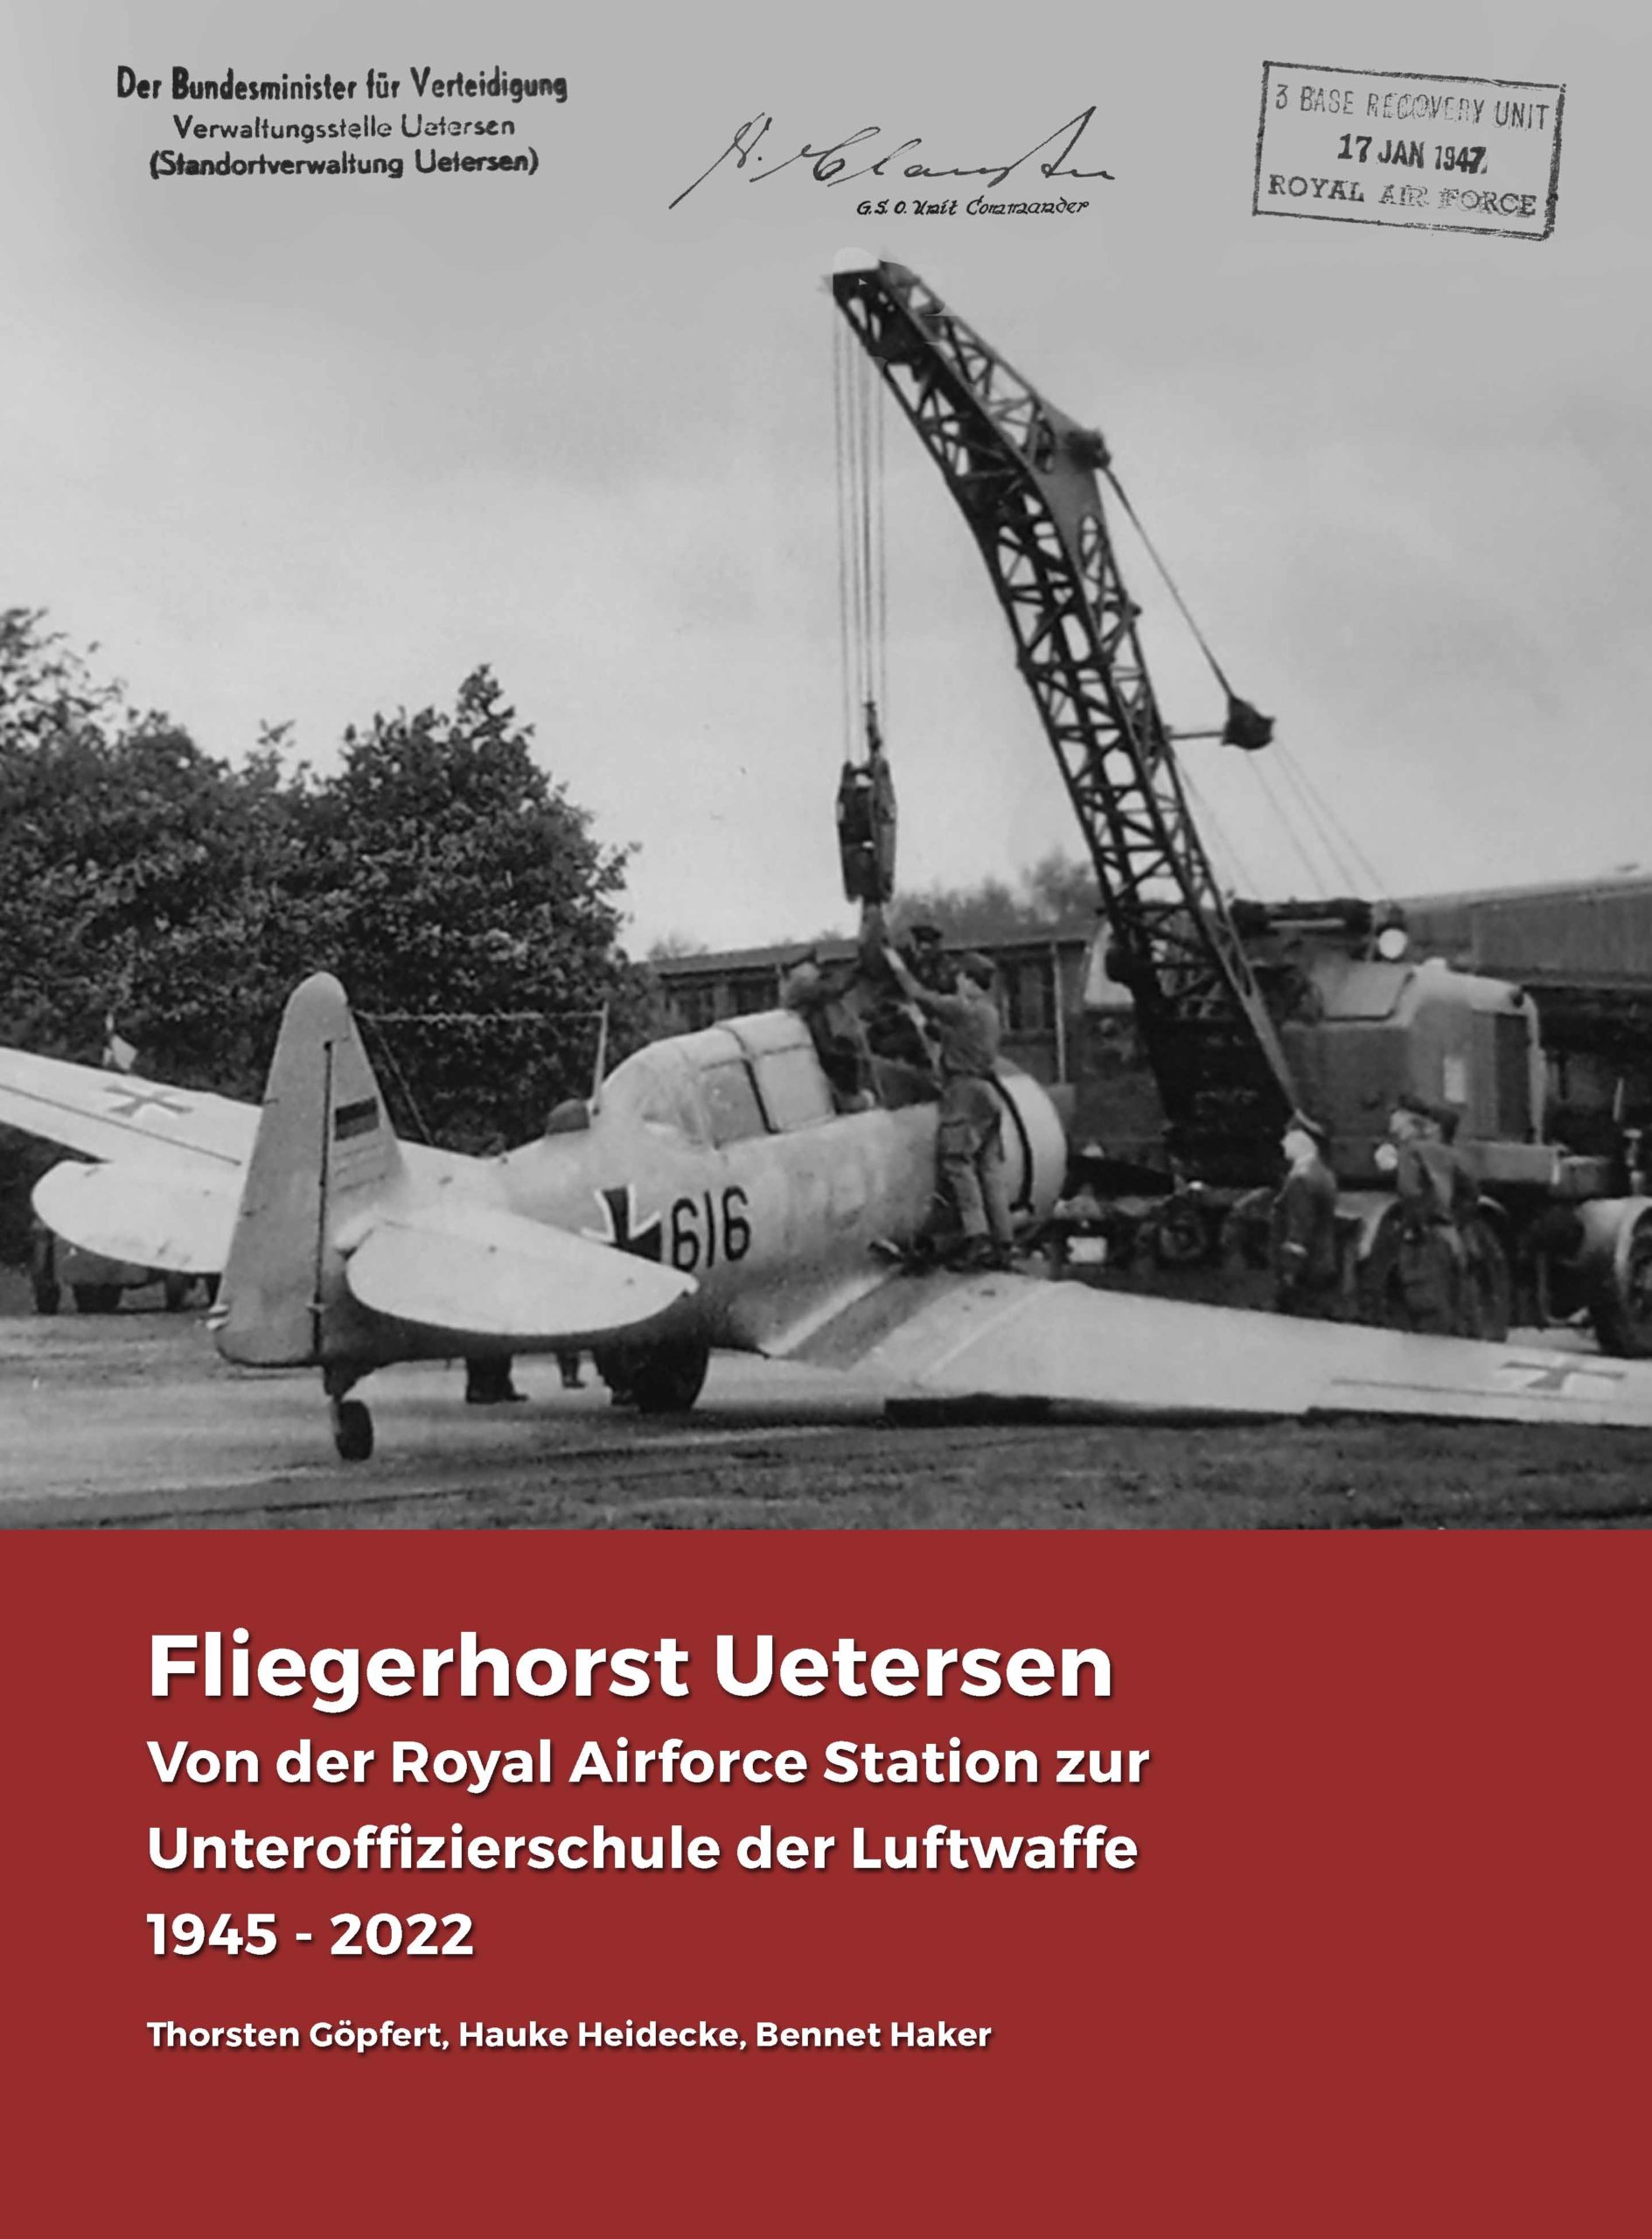 Fliegerhorst Uetersen